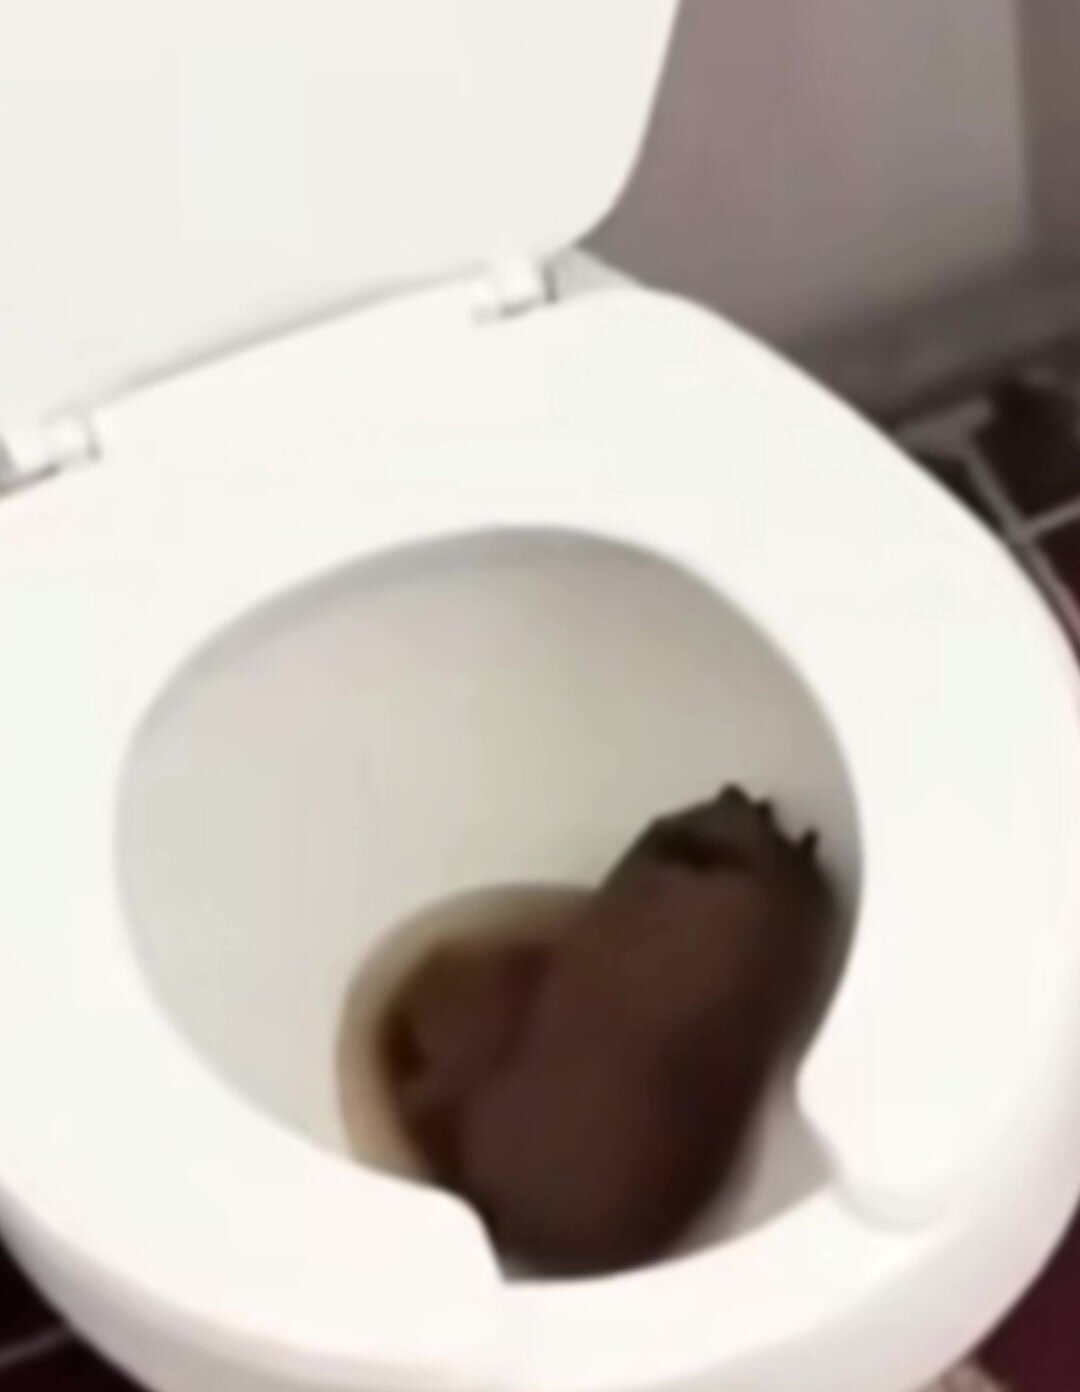 Monster public toilet orphan reveal